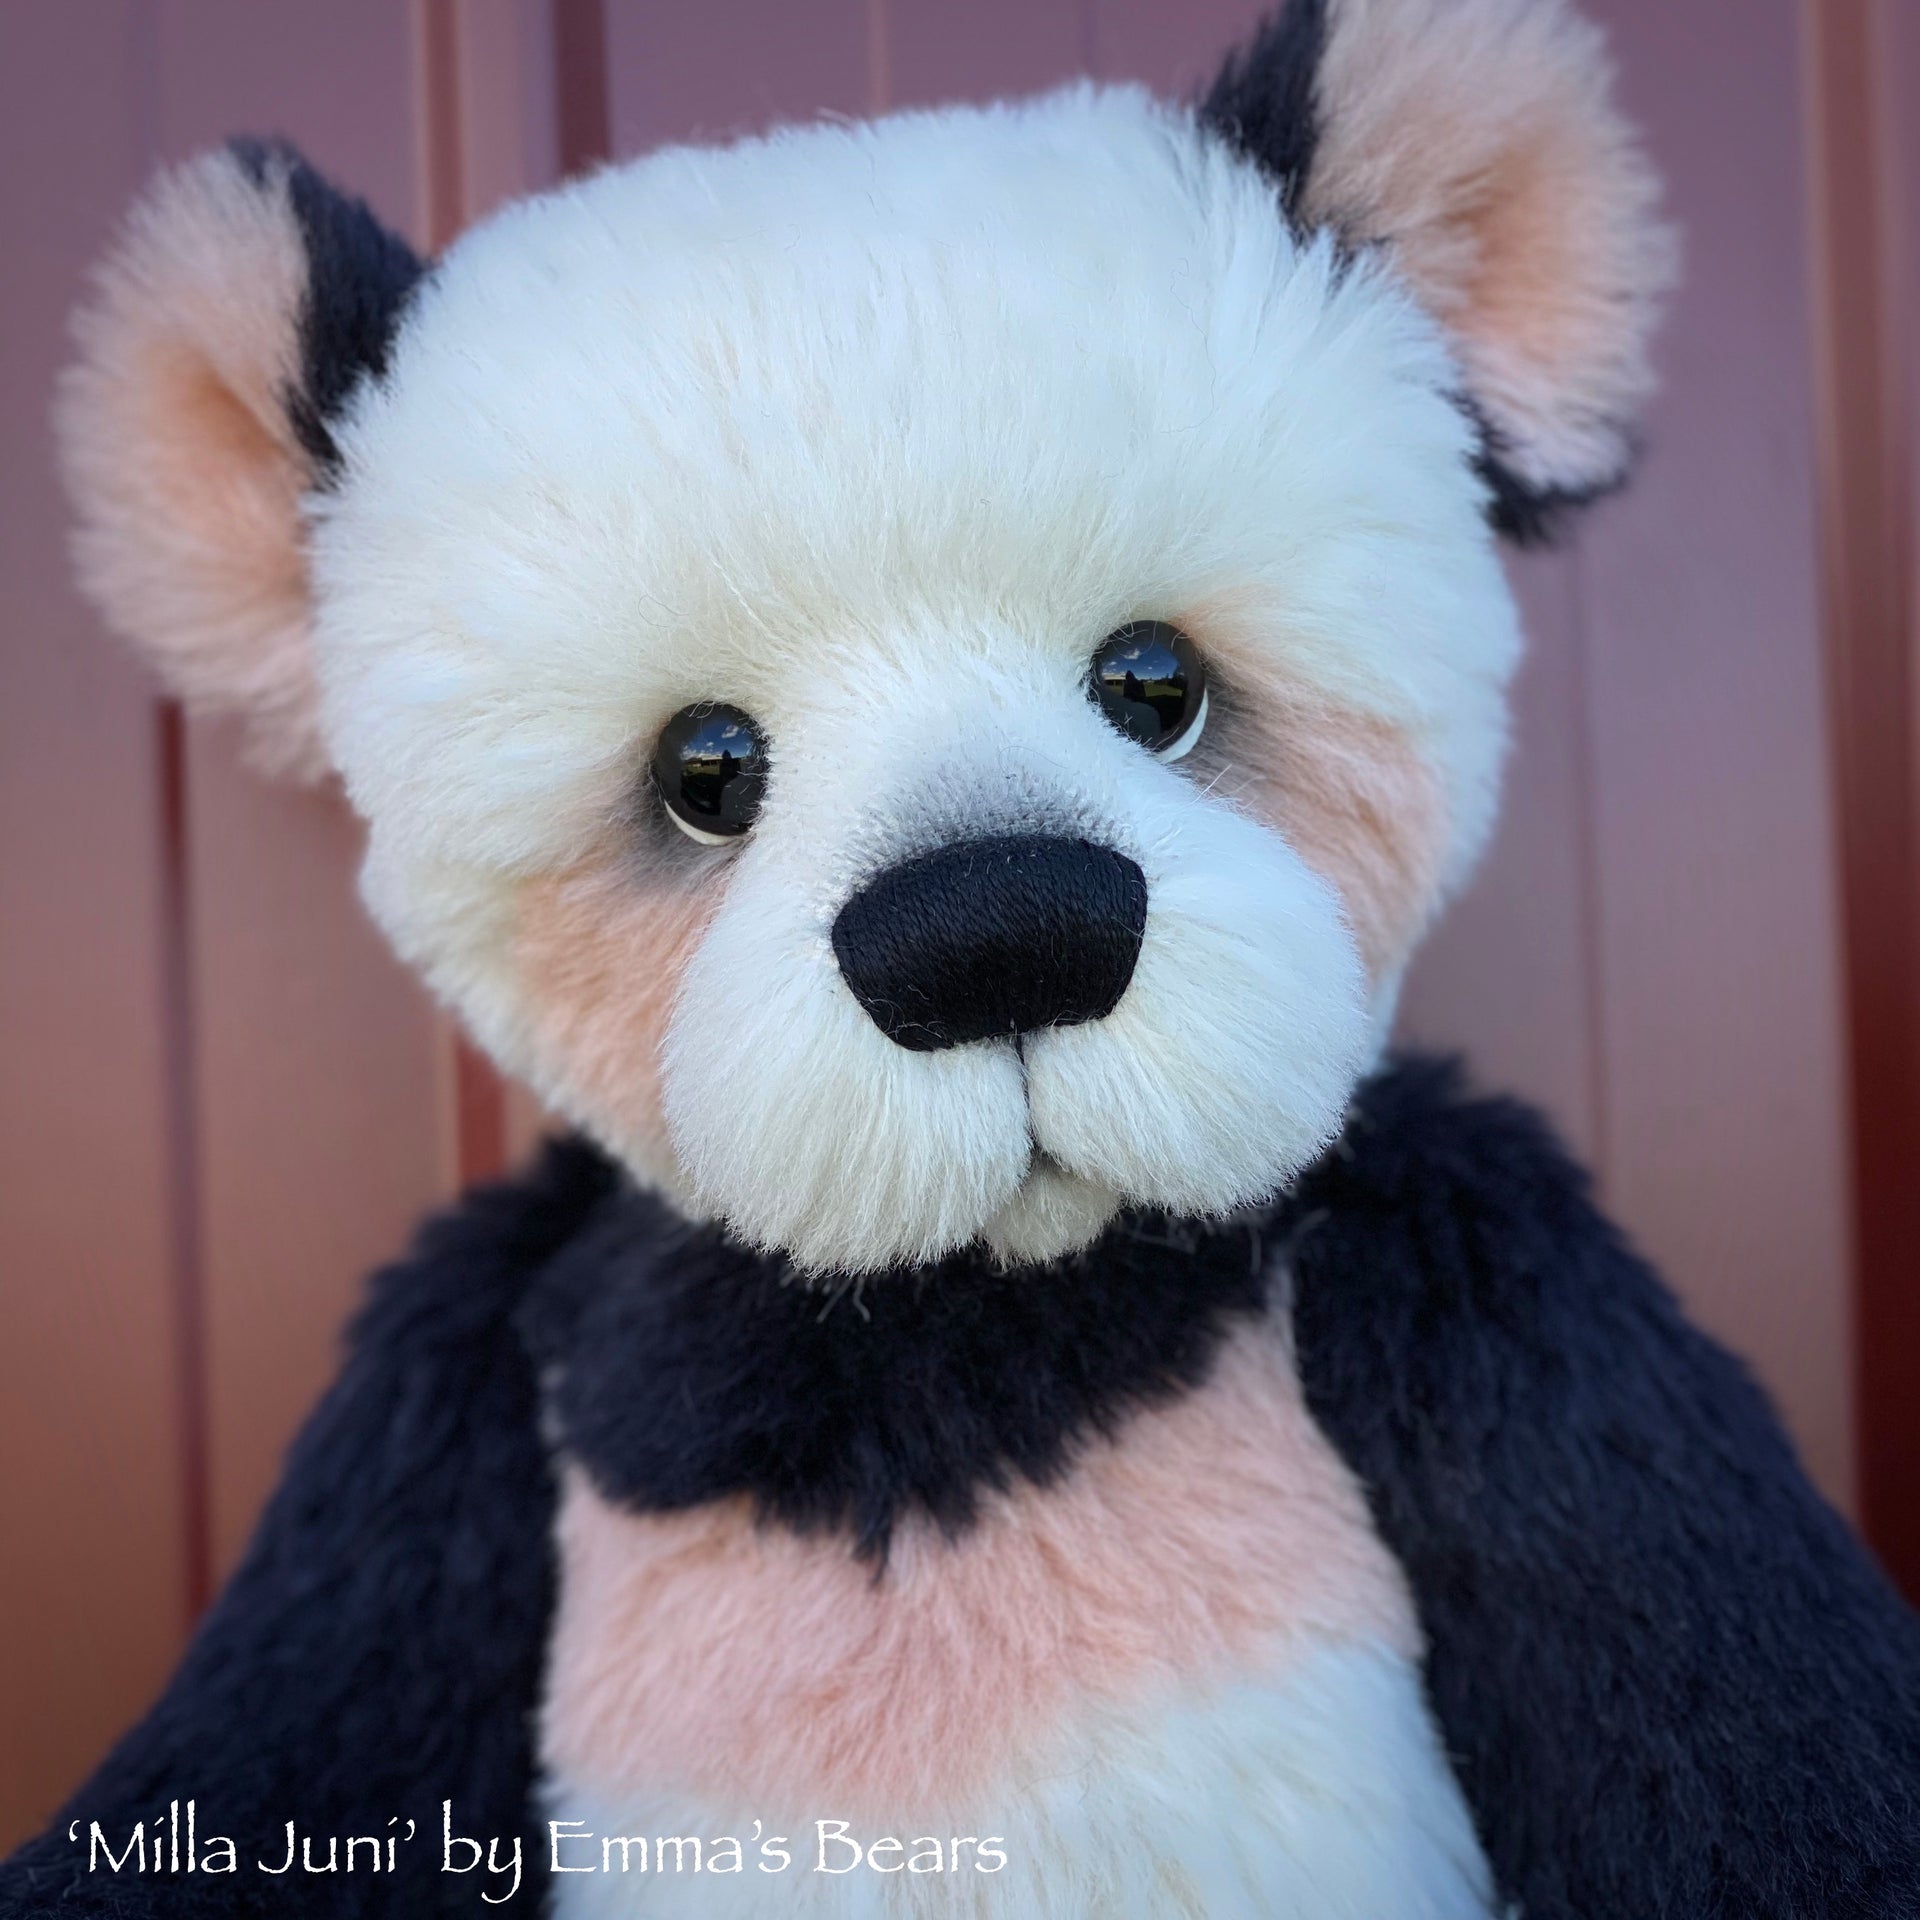 Milla Juni - 18" Artist Baby Bear by Emma's Bears - OOAK